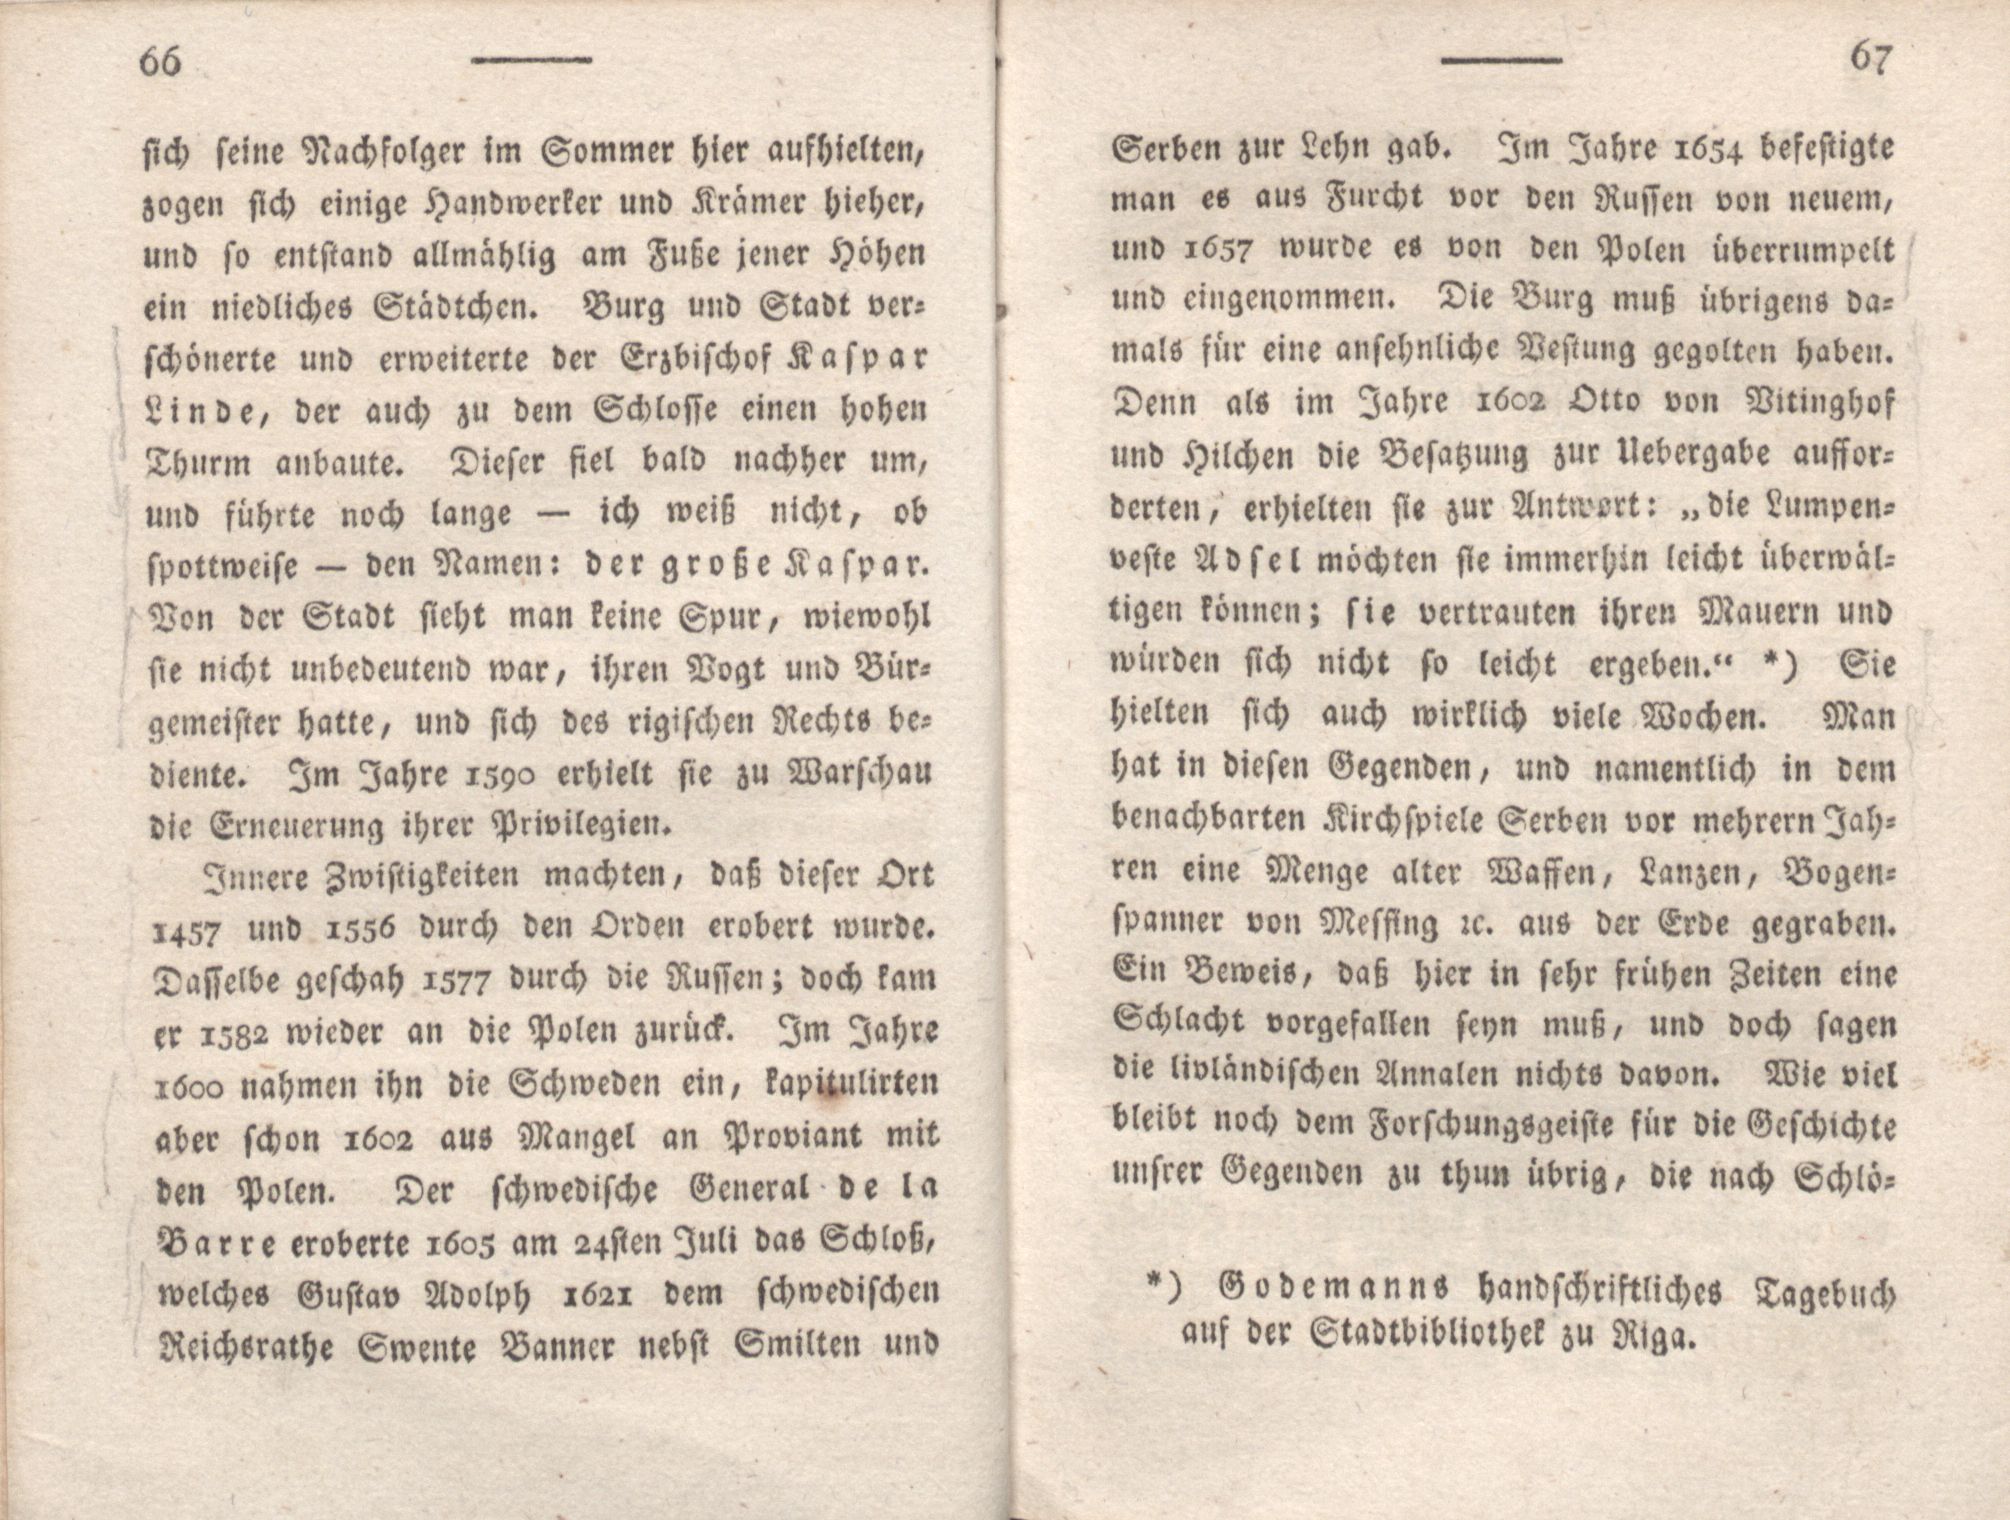 Livona [2] (1815) | 49. (66-67) Main body of text